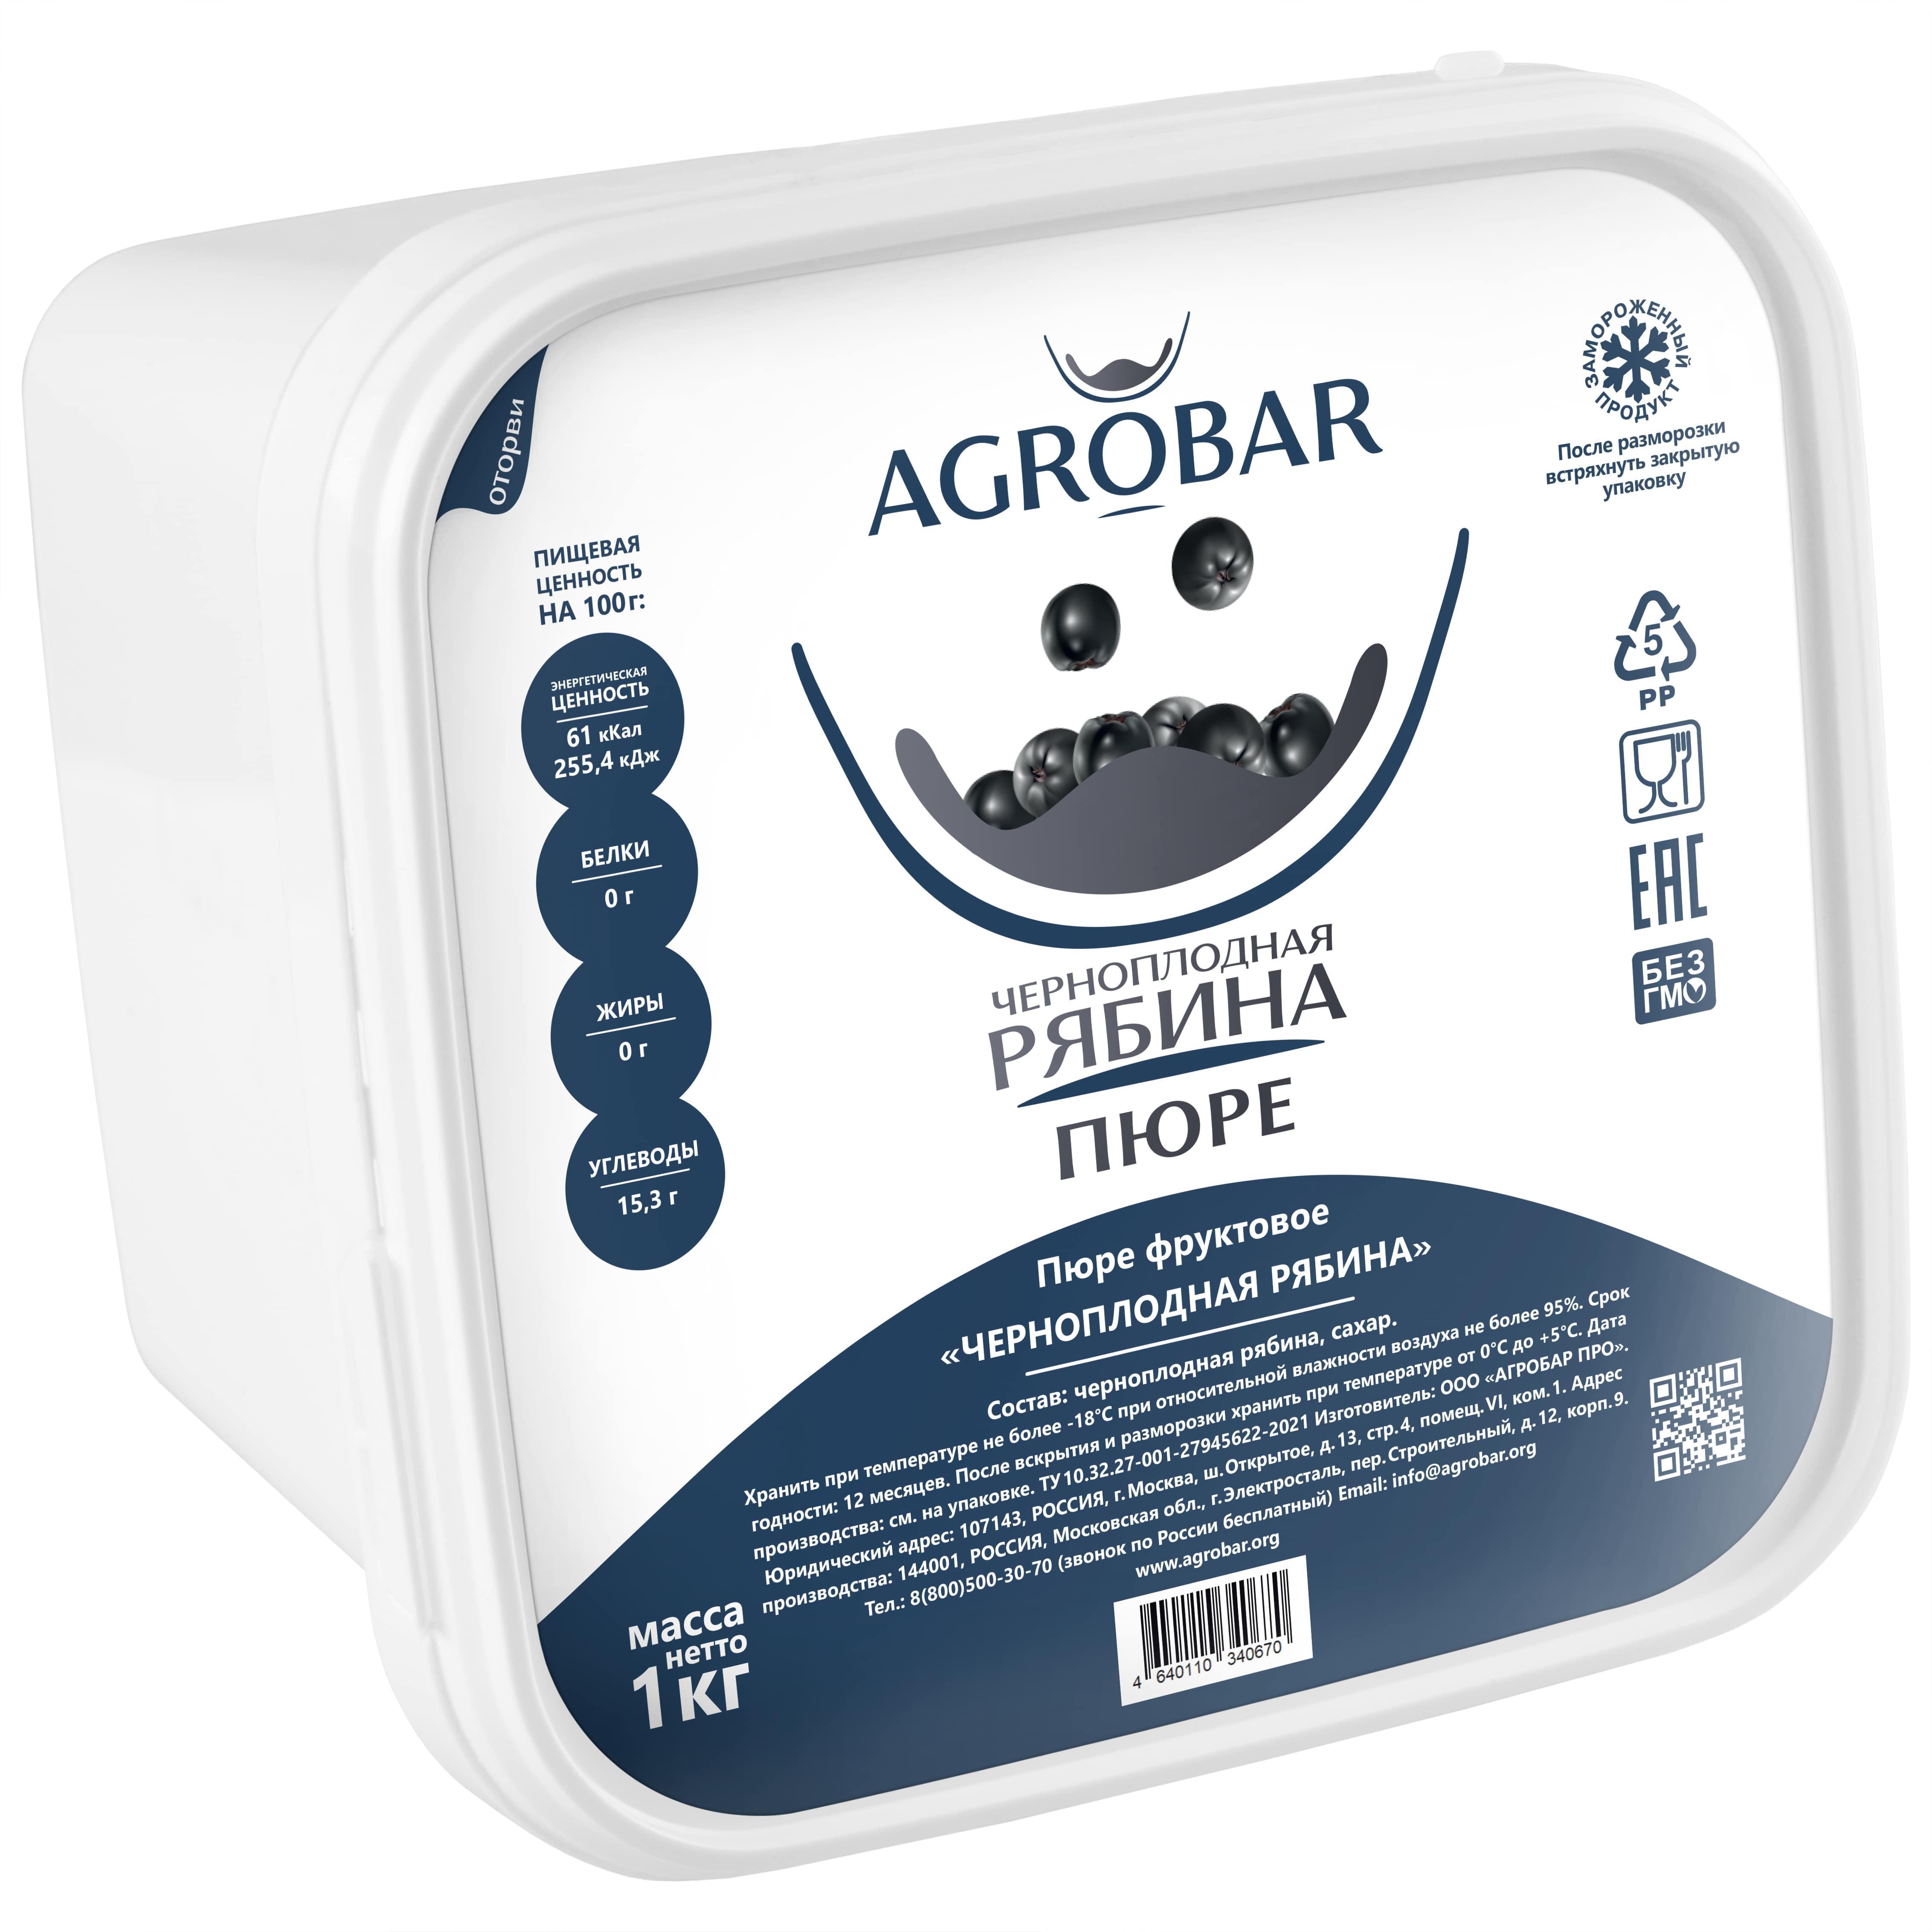 Пюре AGROBAR  Черноплодная Рябина 1 кг., пластиковый контейнер